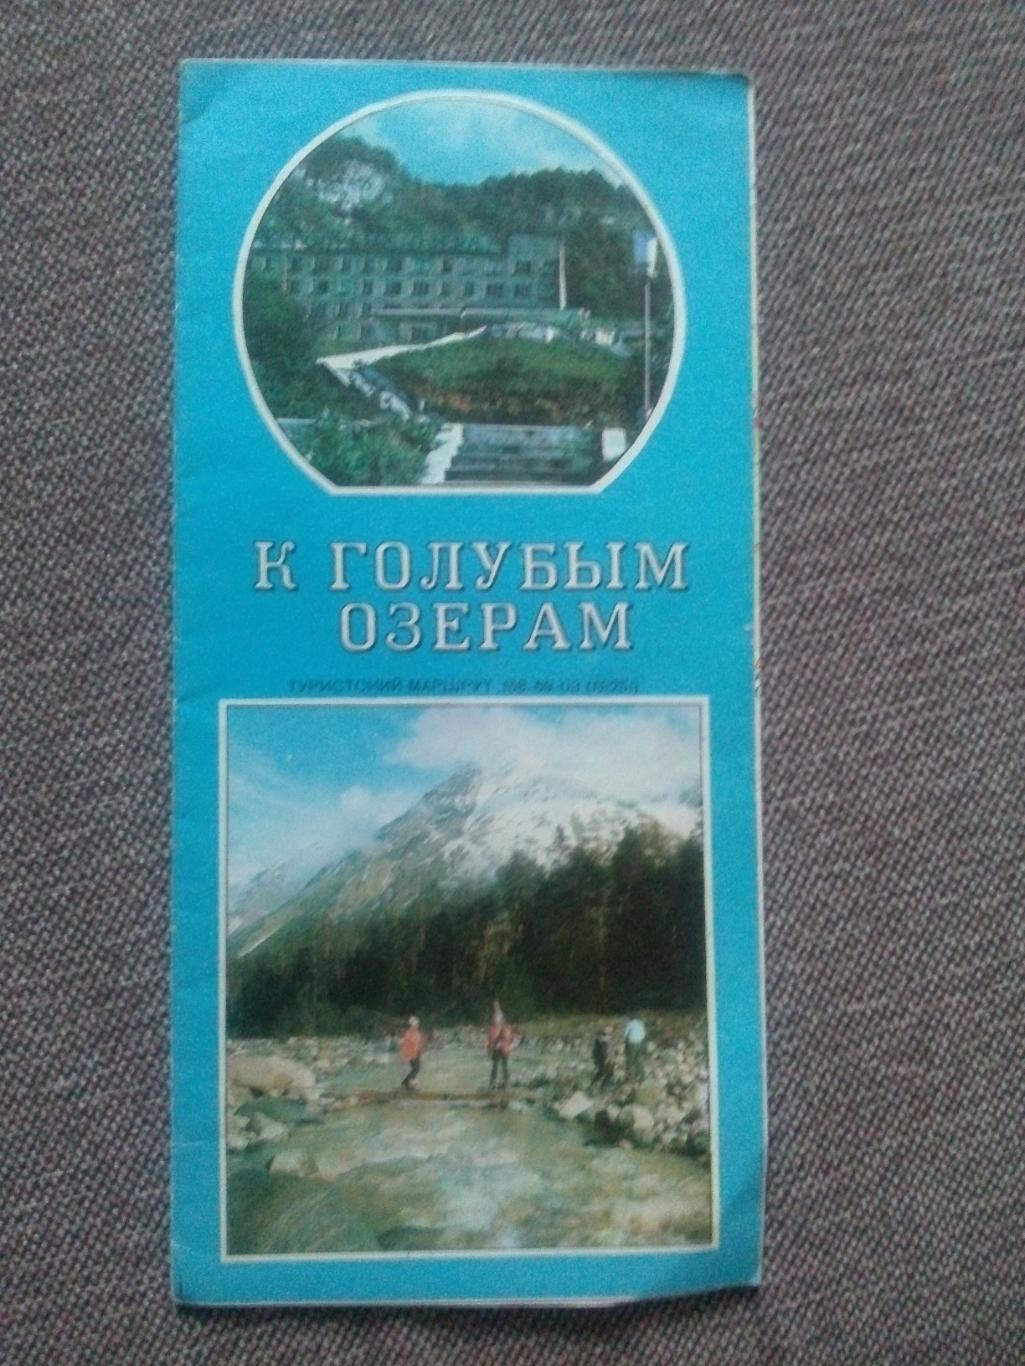 Карта (туристская схема) : К Голубым озерам 1979 г. (Орджоникидзе Нальчик Кавказ